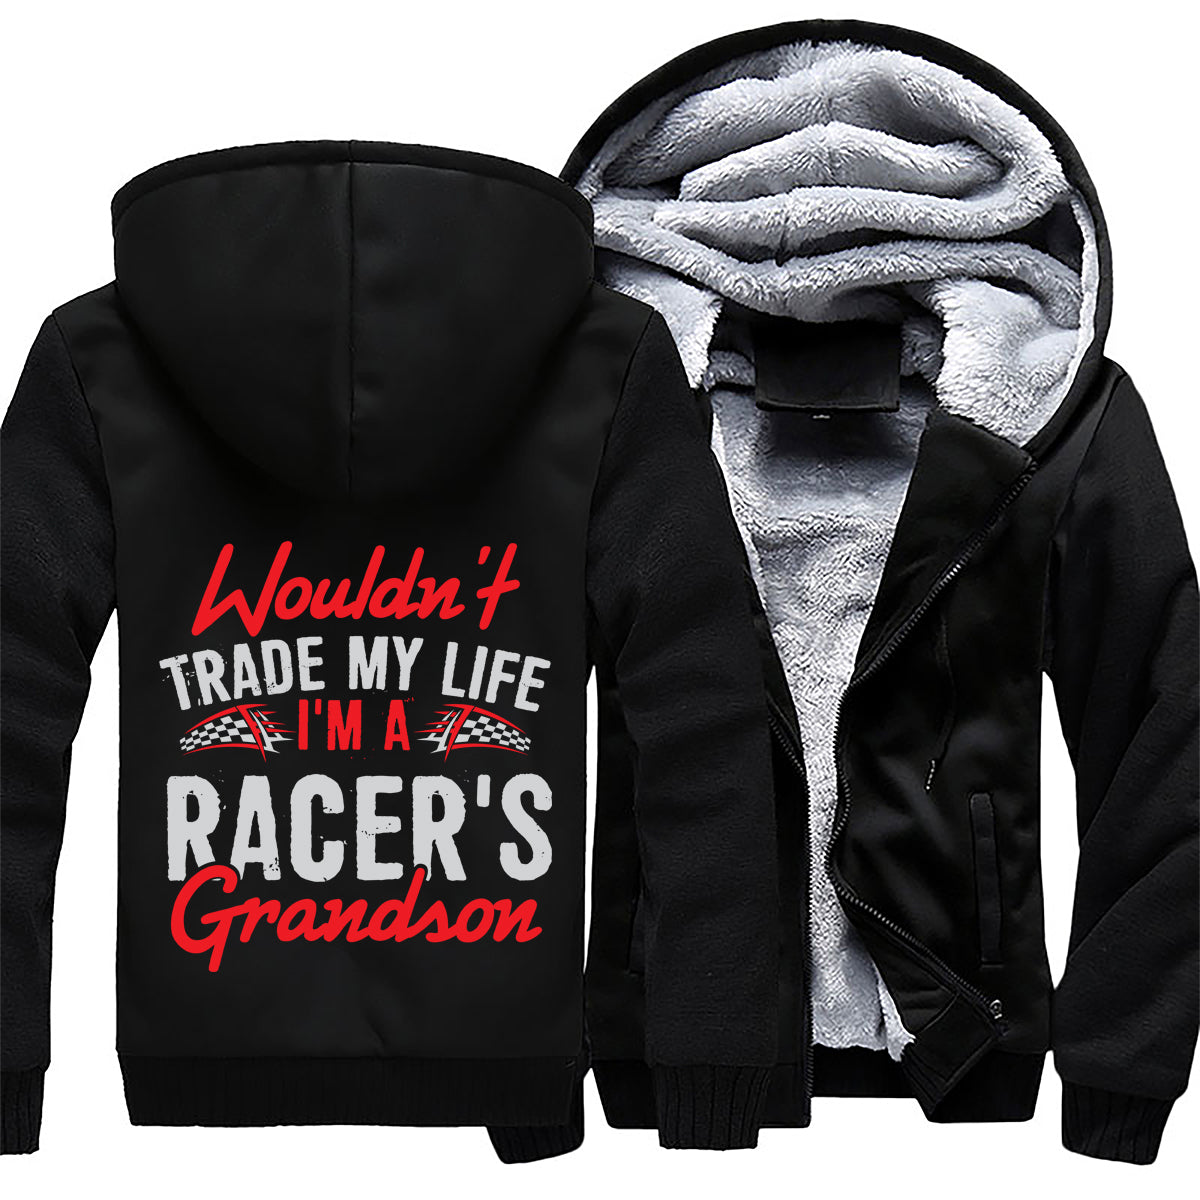 I'm A Racer's Grandson Jacket 